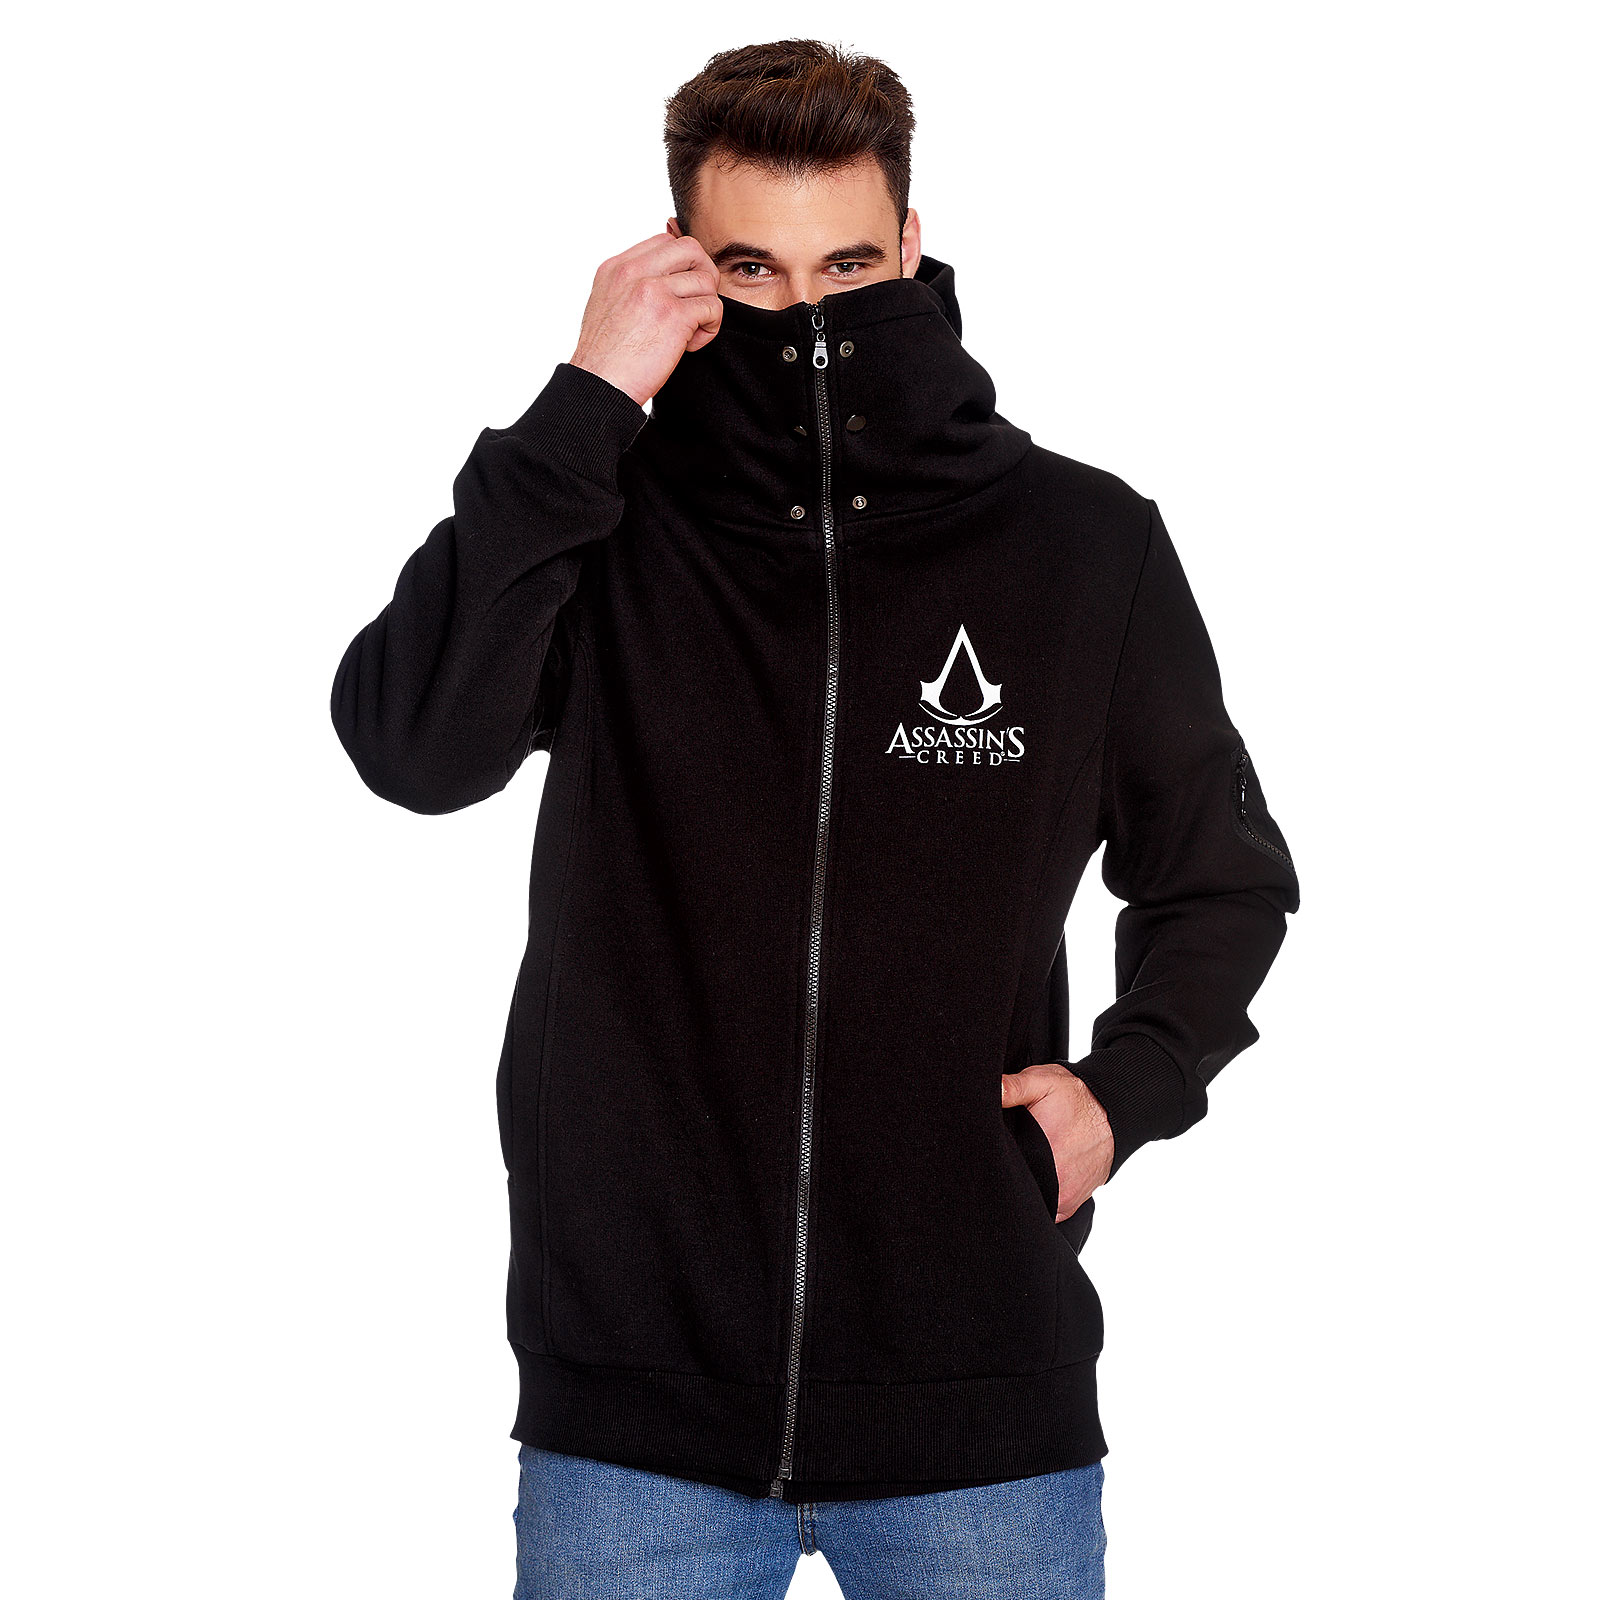 Assassins Creed - Sweat à capuche logo double couche noir